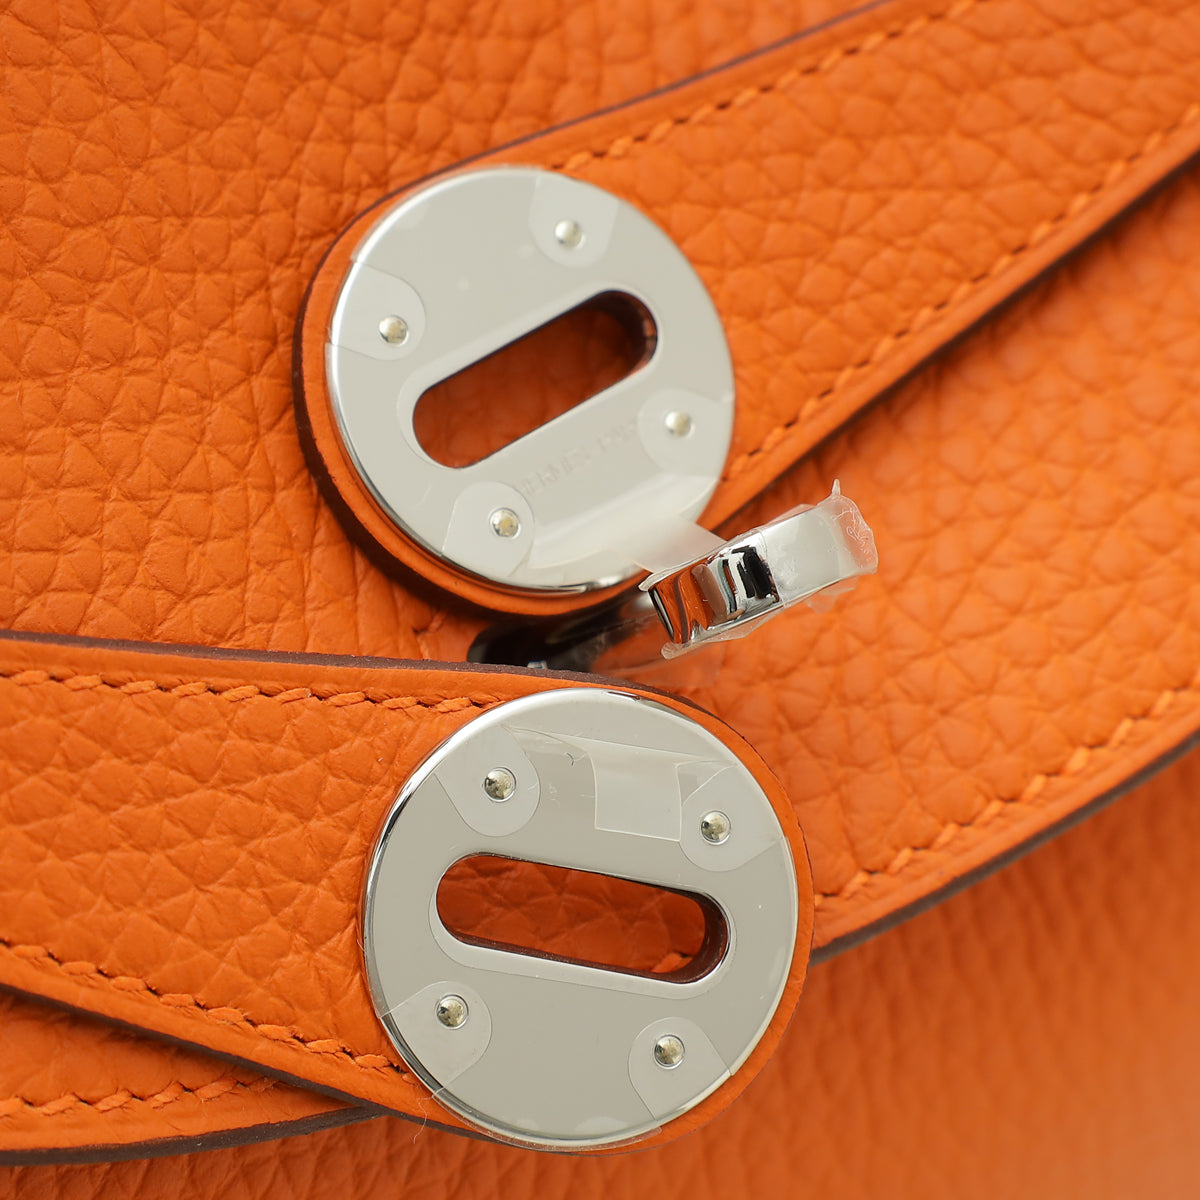 Hermes Orange Lindy 26 Bag